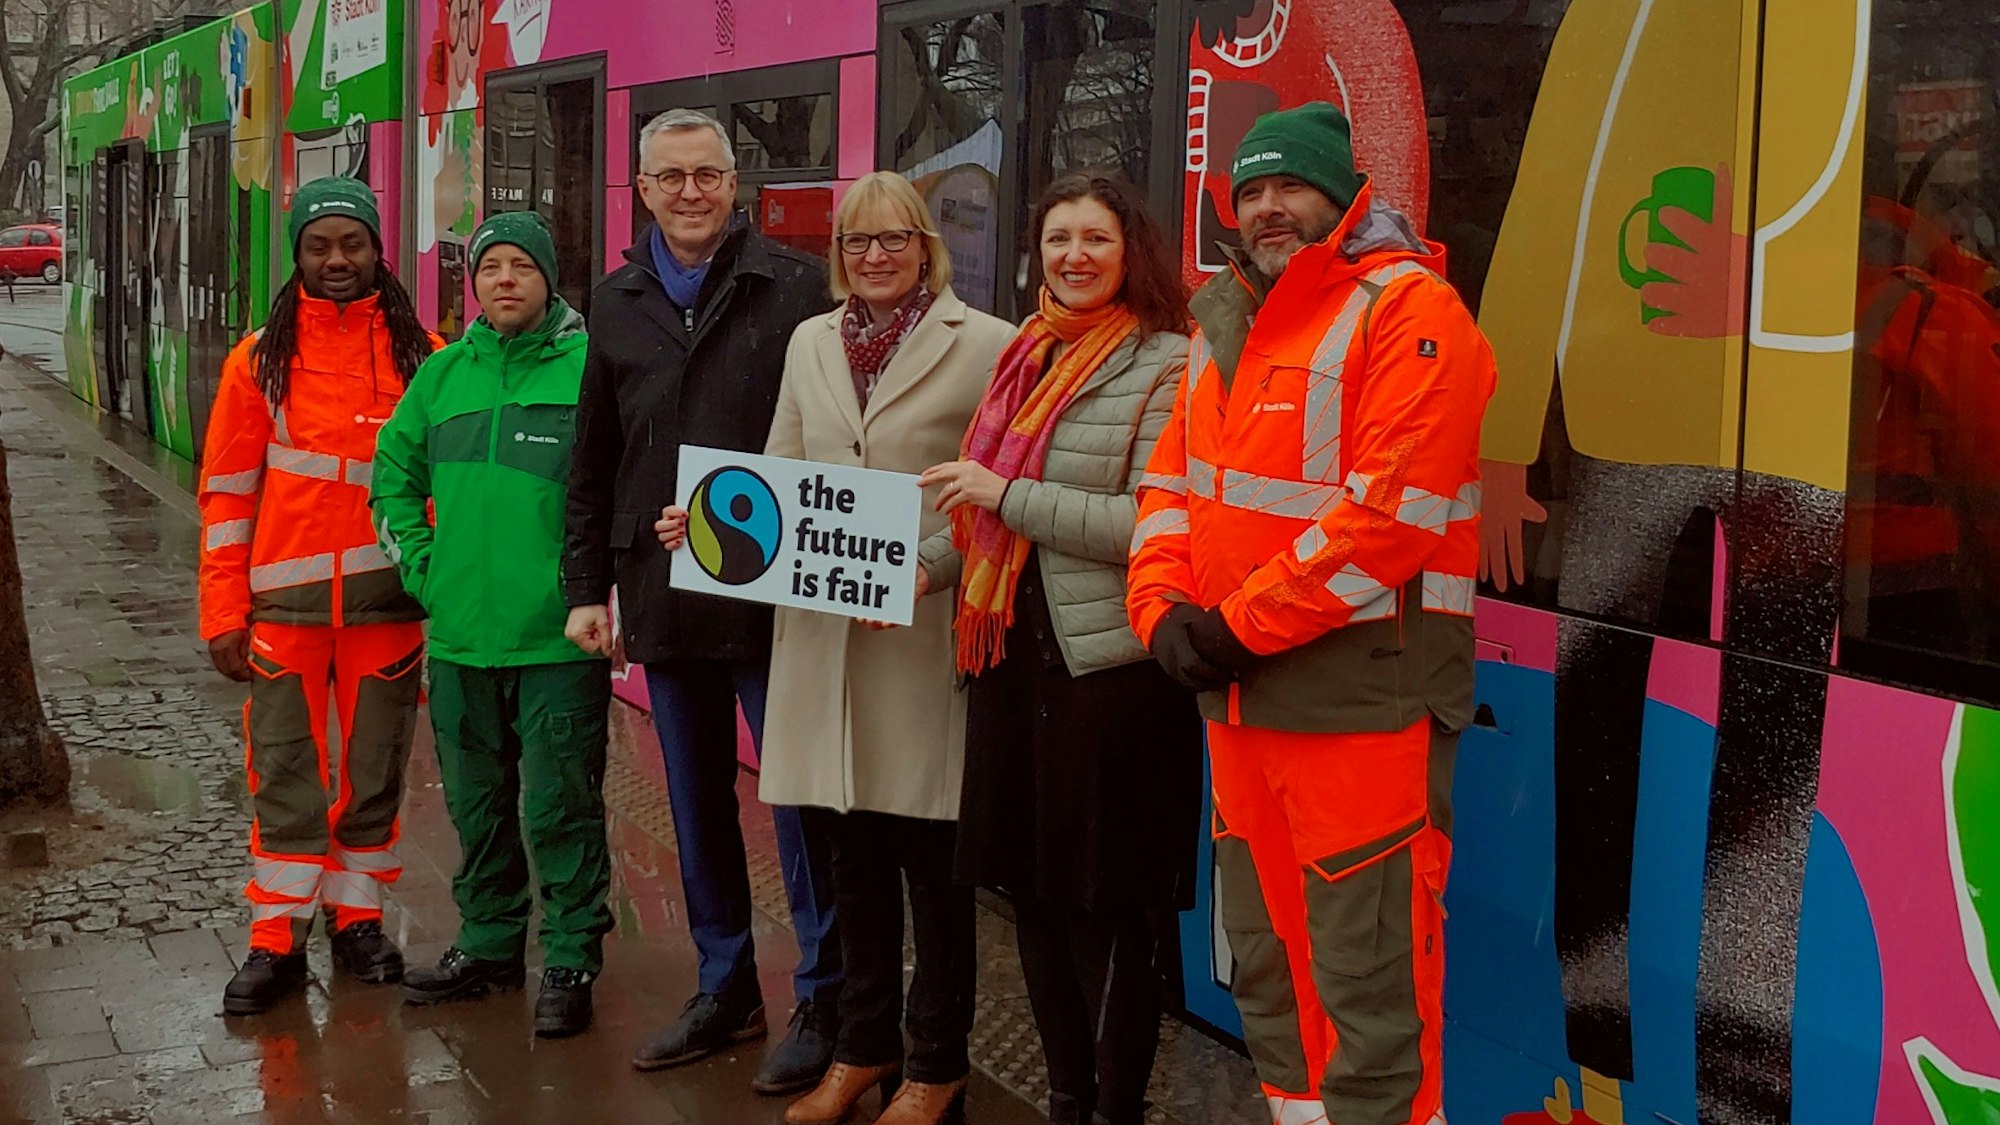 Sechs Personen, die mit einem „The future is fair“-Schild vor einer bunt gestalteten Straßenbahn stehen